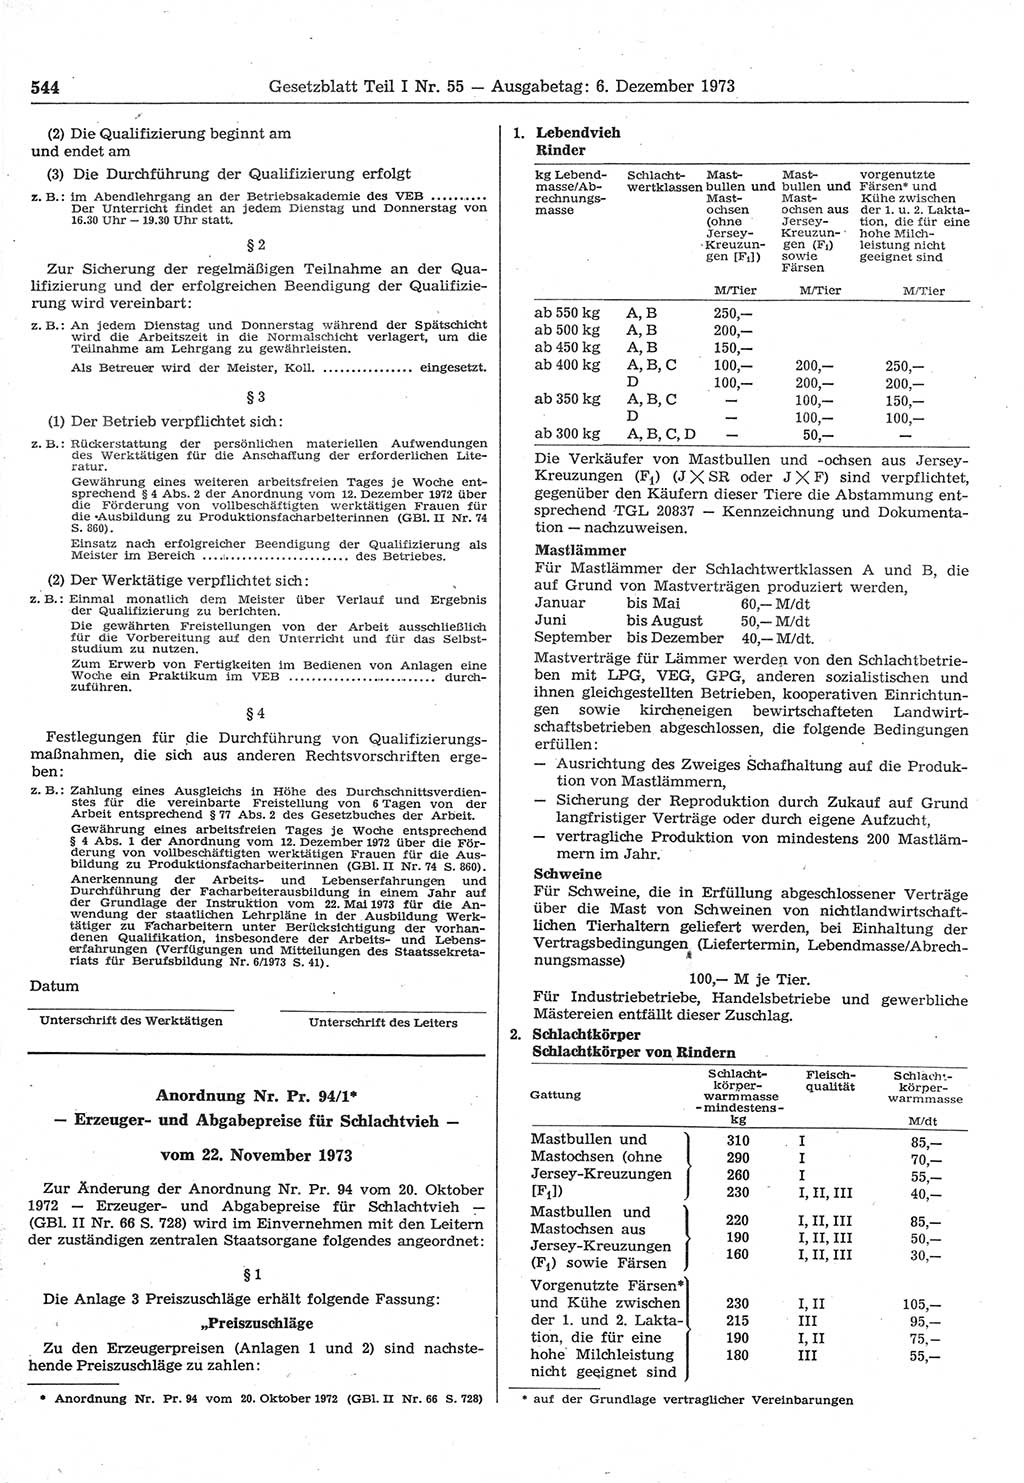 Gesetzblatt (GBl.) der Deutschen Demokratischen Republik (DDR) Teil Ⅰ 1973, Seite 544 (GBl. DDR Ⅰ 1973, S. 544)